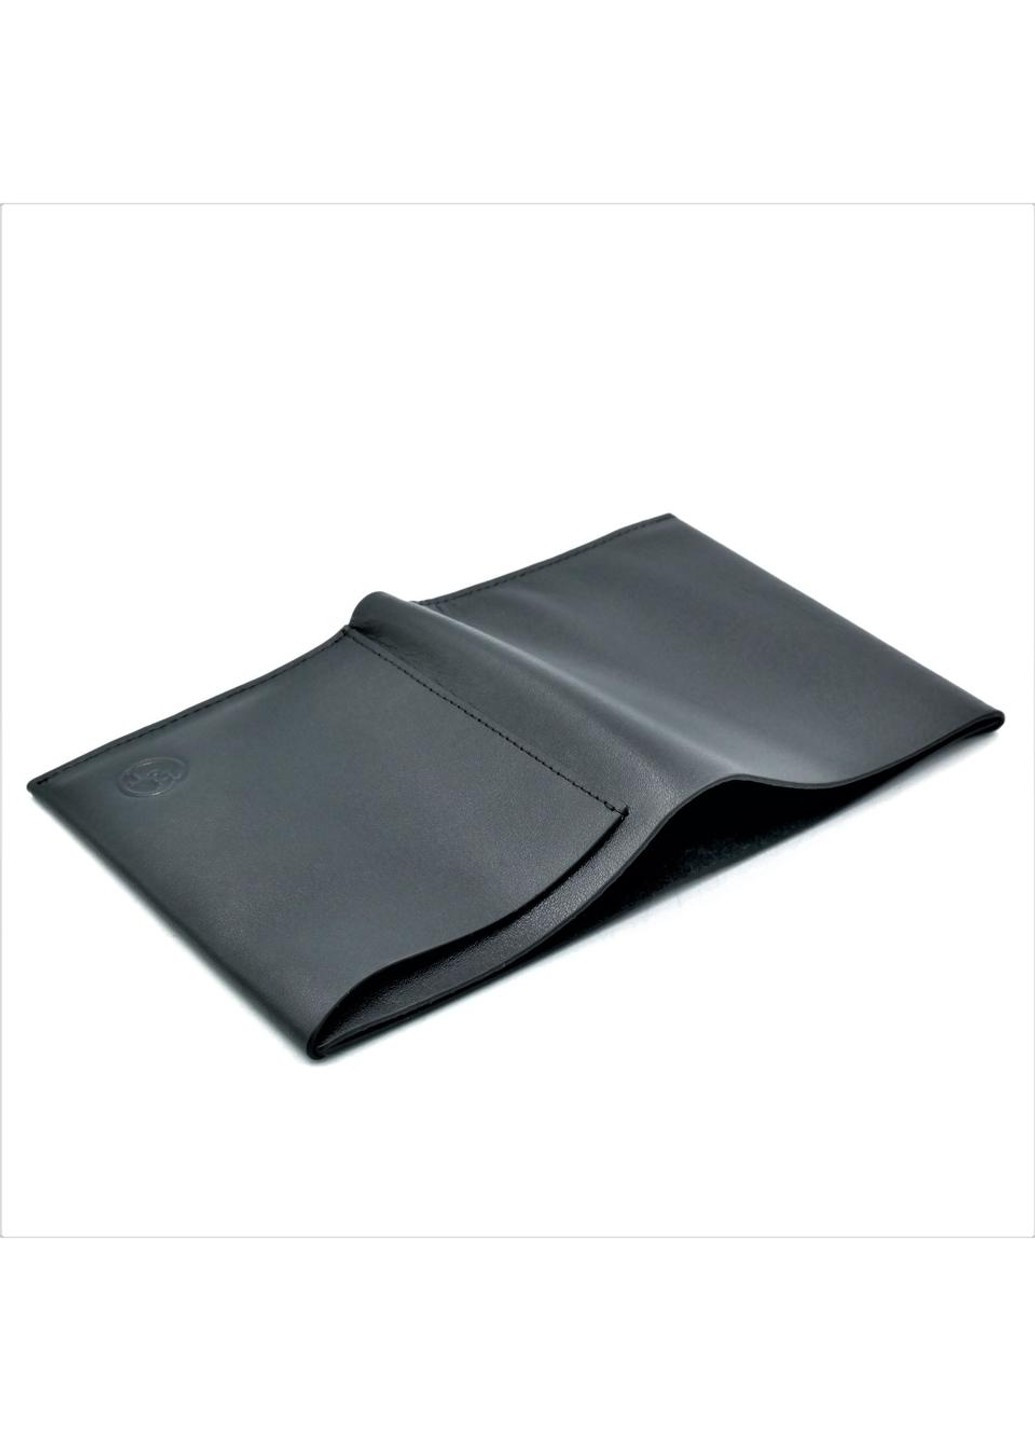 Мужской кожаный кошелек 12,5 х 6 х 2 см Черный wtro-165-13-2 Weatro (272596173)